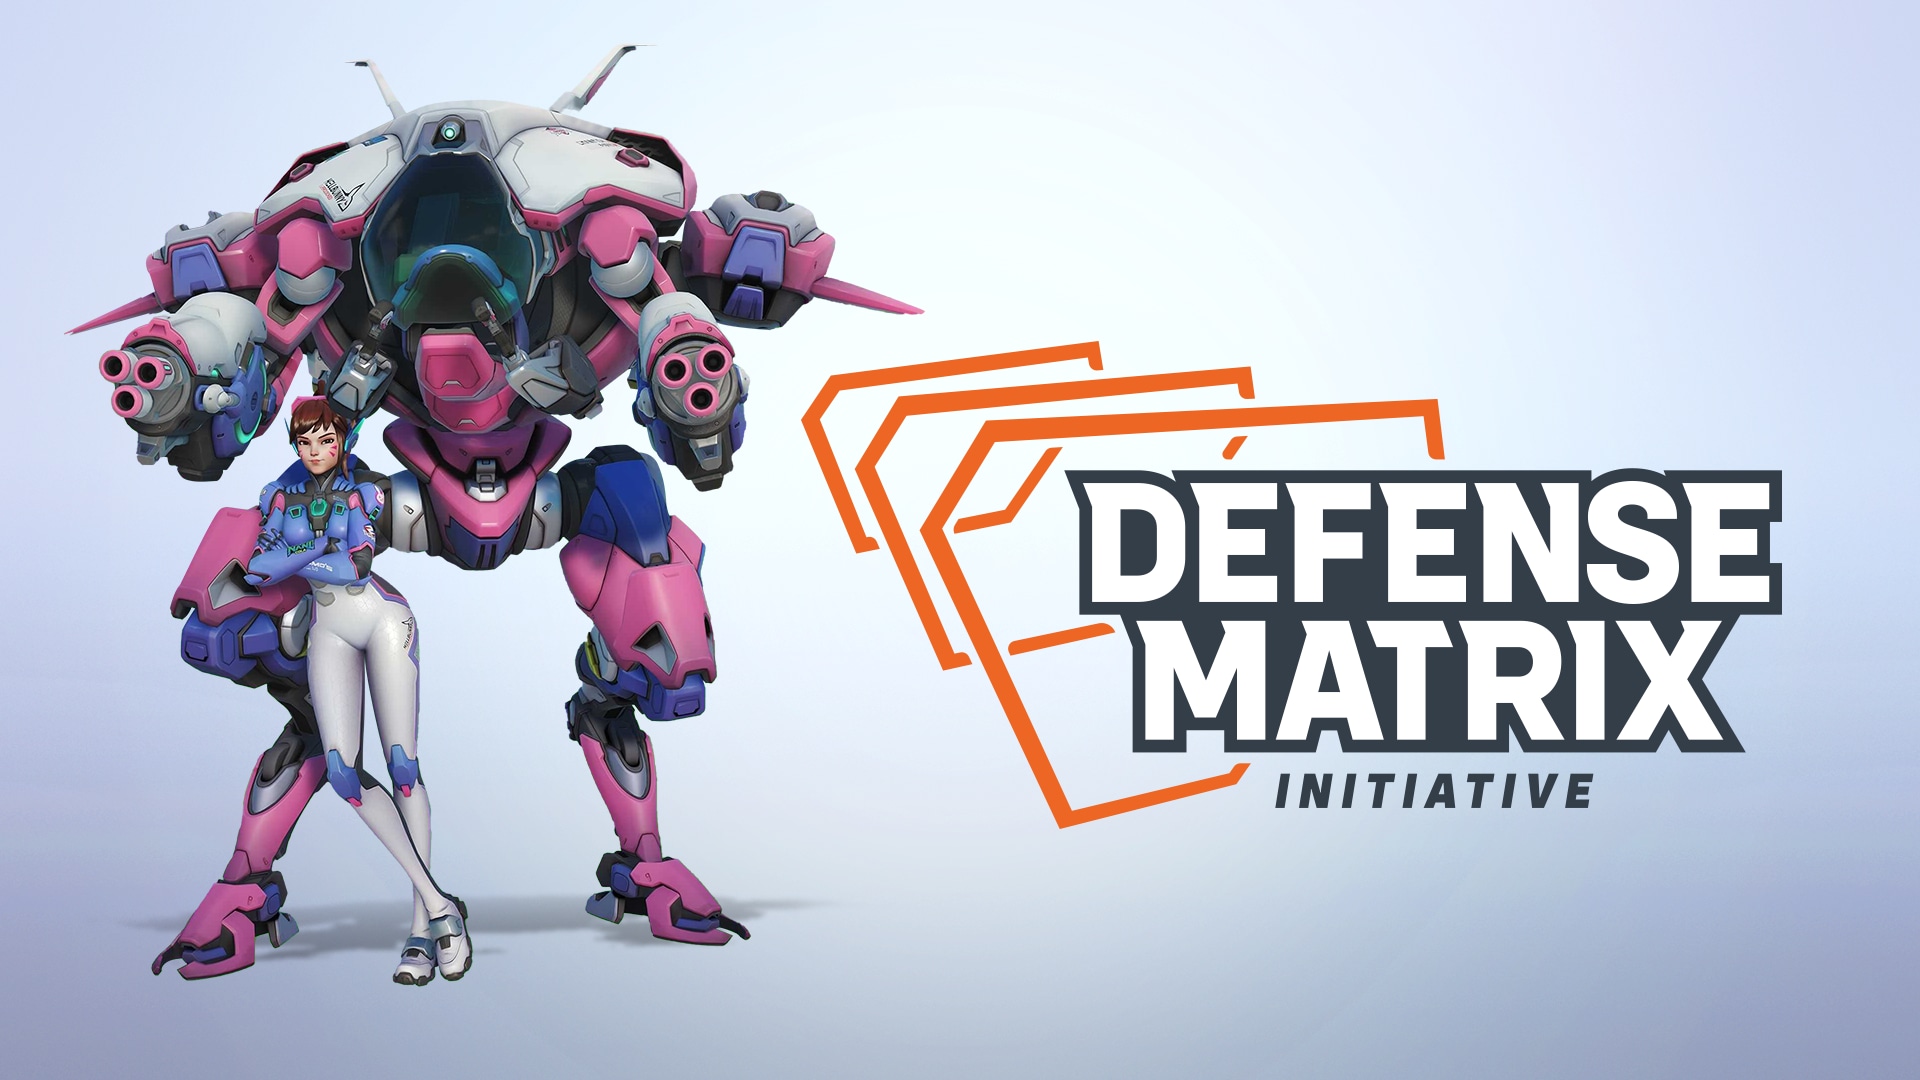 Atualização da 9ª Temporada com a Defense Matrix – Indicação de jogadores positivos